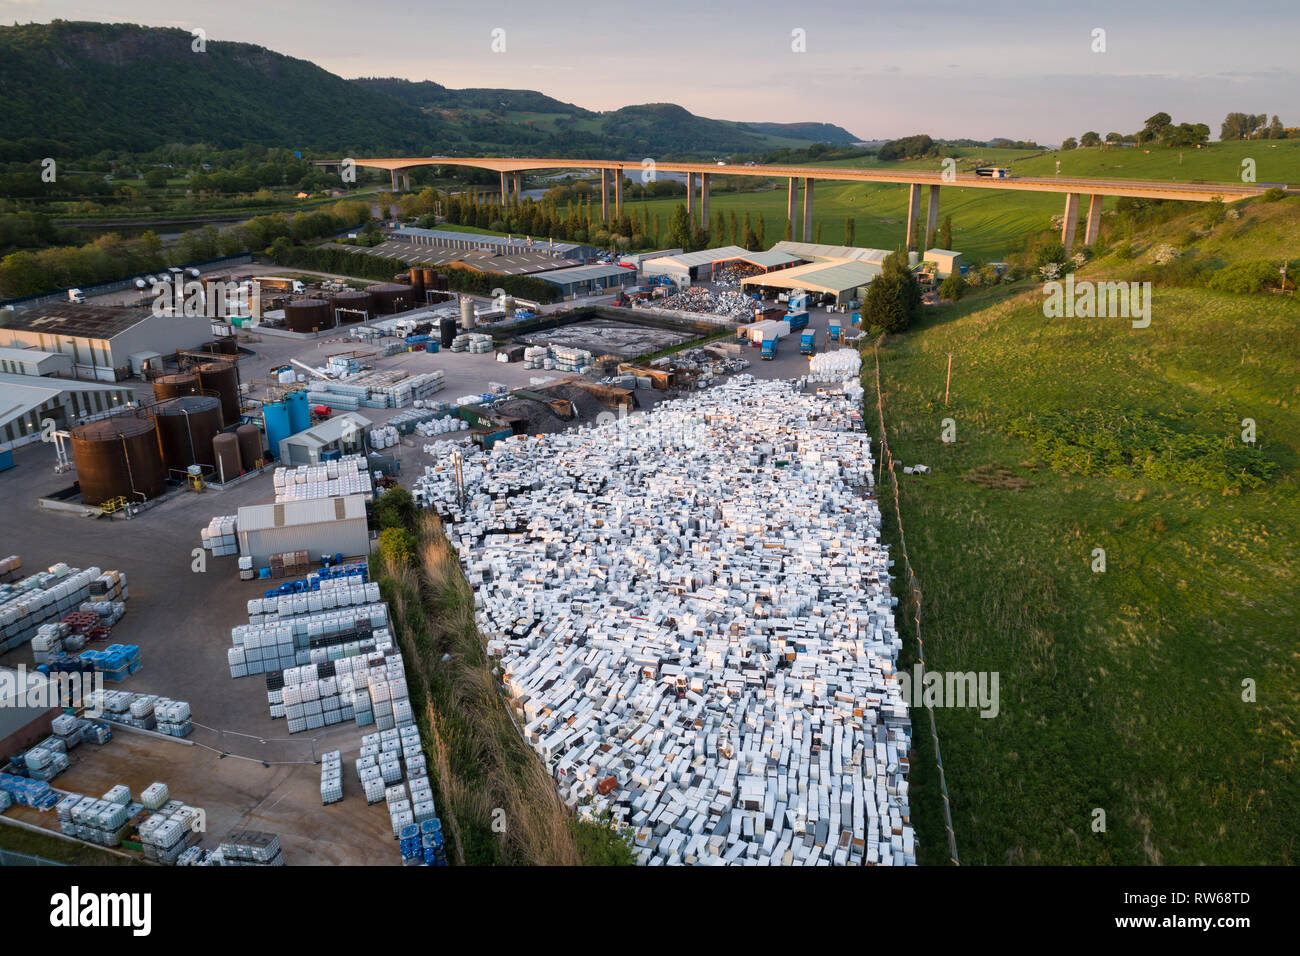 Luftbild der Kühlschrank Recycling und Entsorgung Yard in Perth,  Schottland, zeigt Tausende von gebrauchten Kühlschrank in Stapeln  Stockfotografie - Alamy